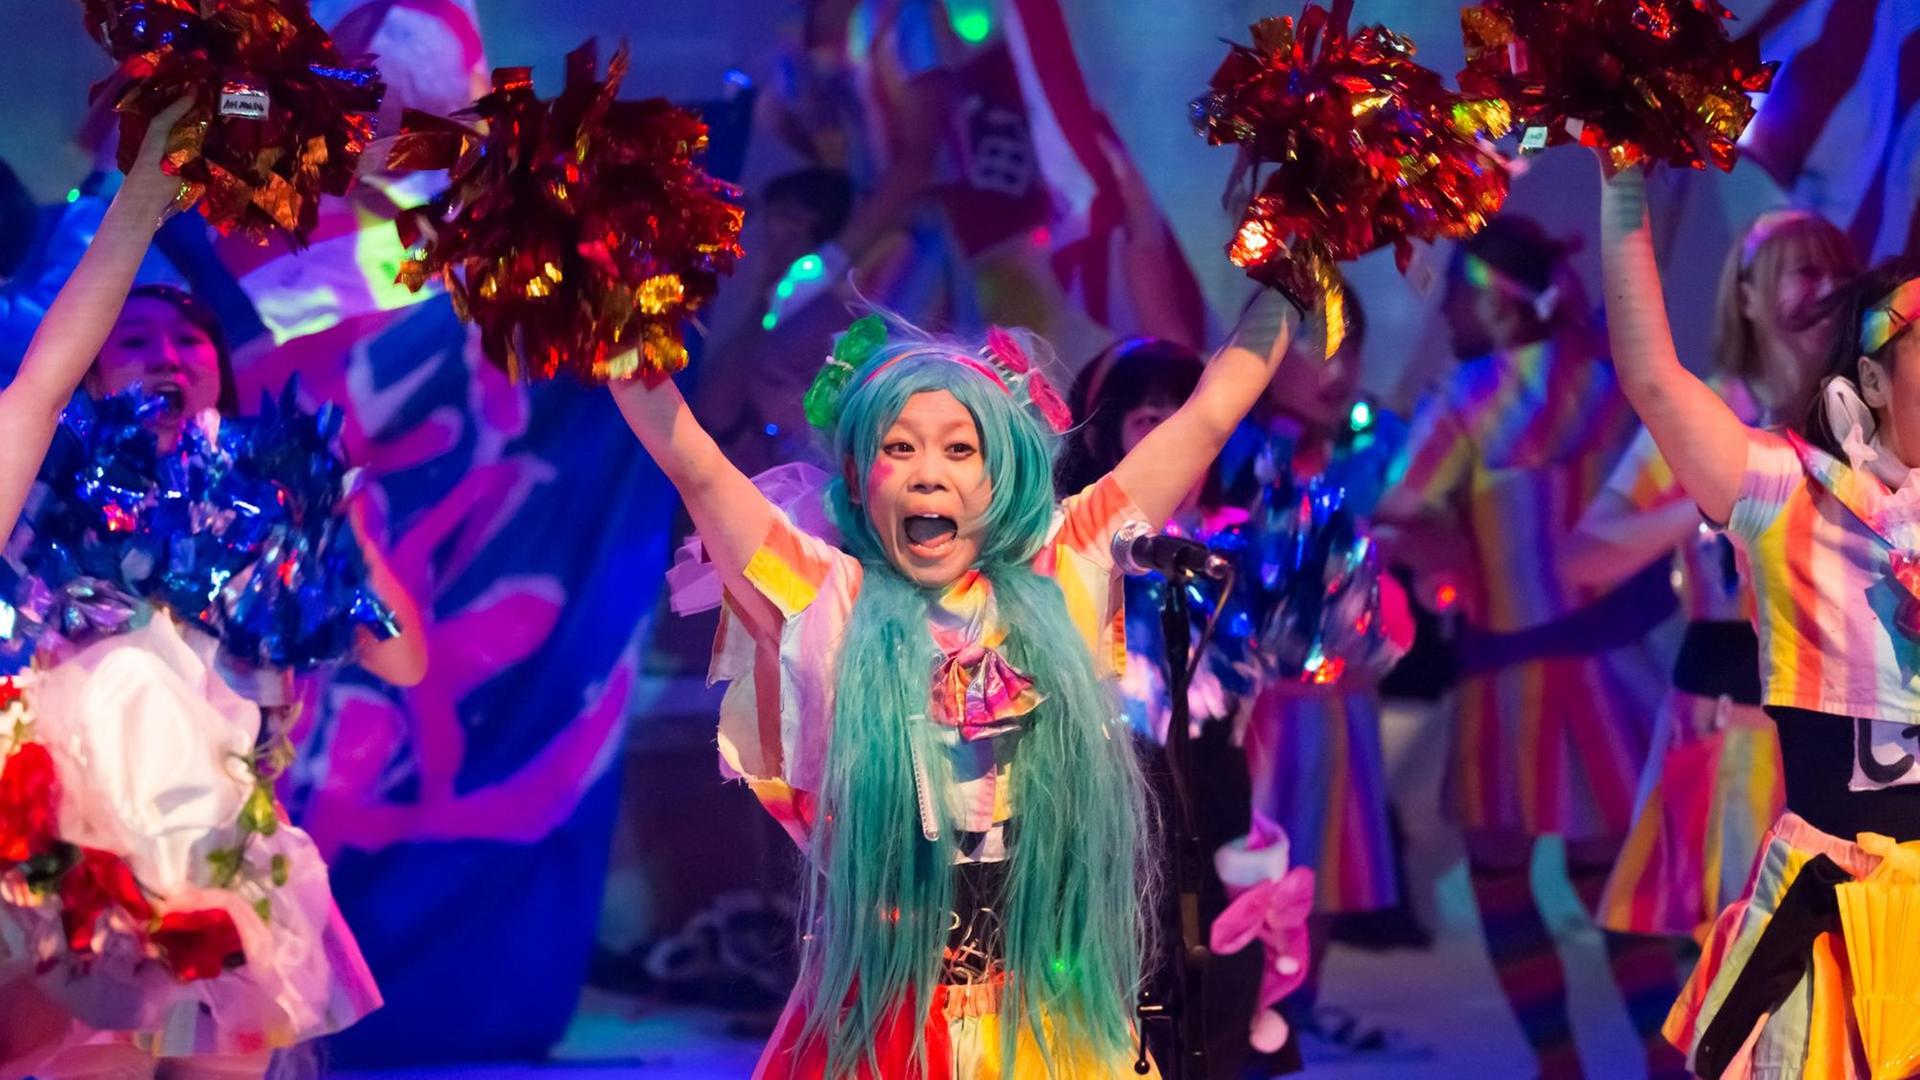 Eine asiatische Frau tanzt mit in die Luft gestreckten Armen in buntem Kostüm und mit bunter Perücke auf einer Bühne.